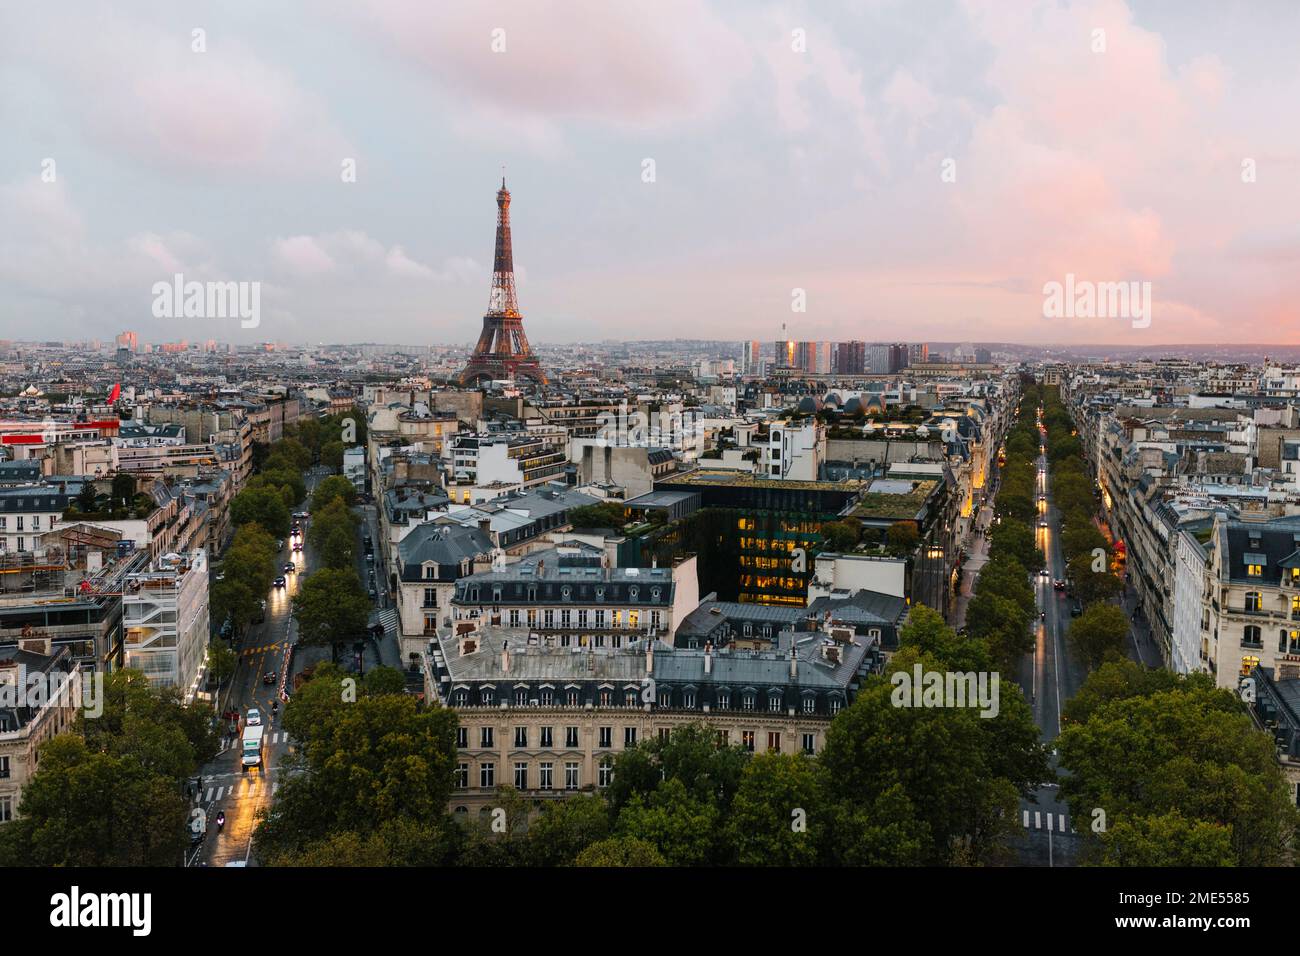 Francia, Ile-de-France, París, horizonte de la ciudad con la Torre Eiffel en el fondo Foto de stock